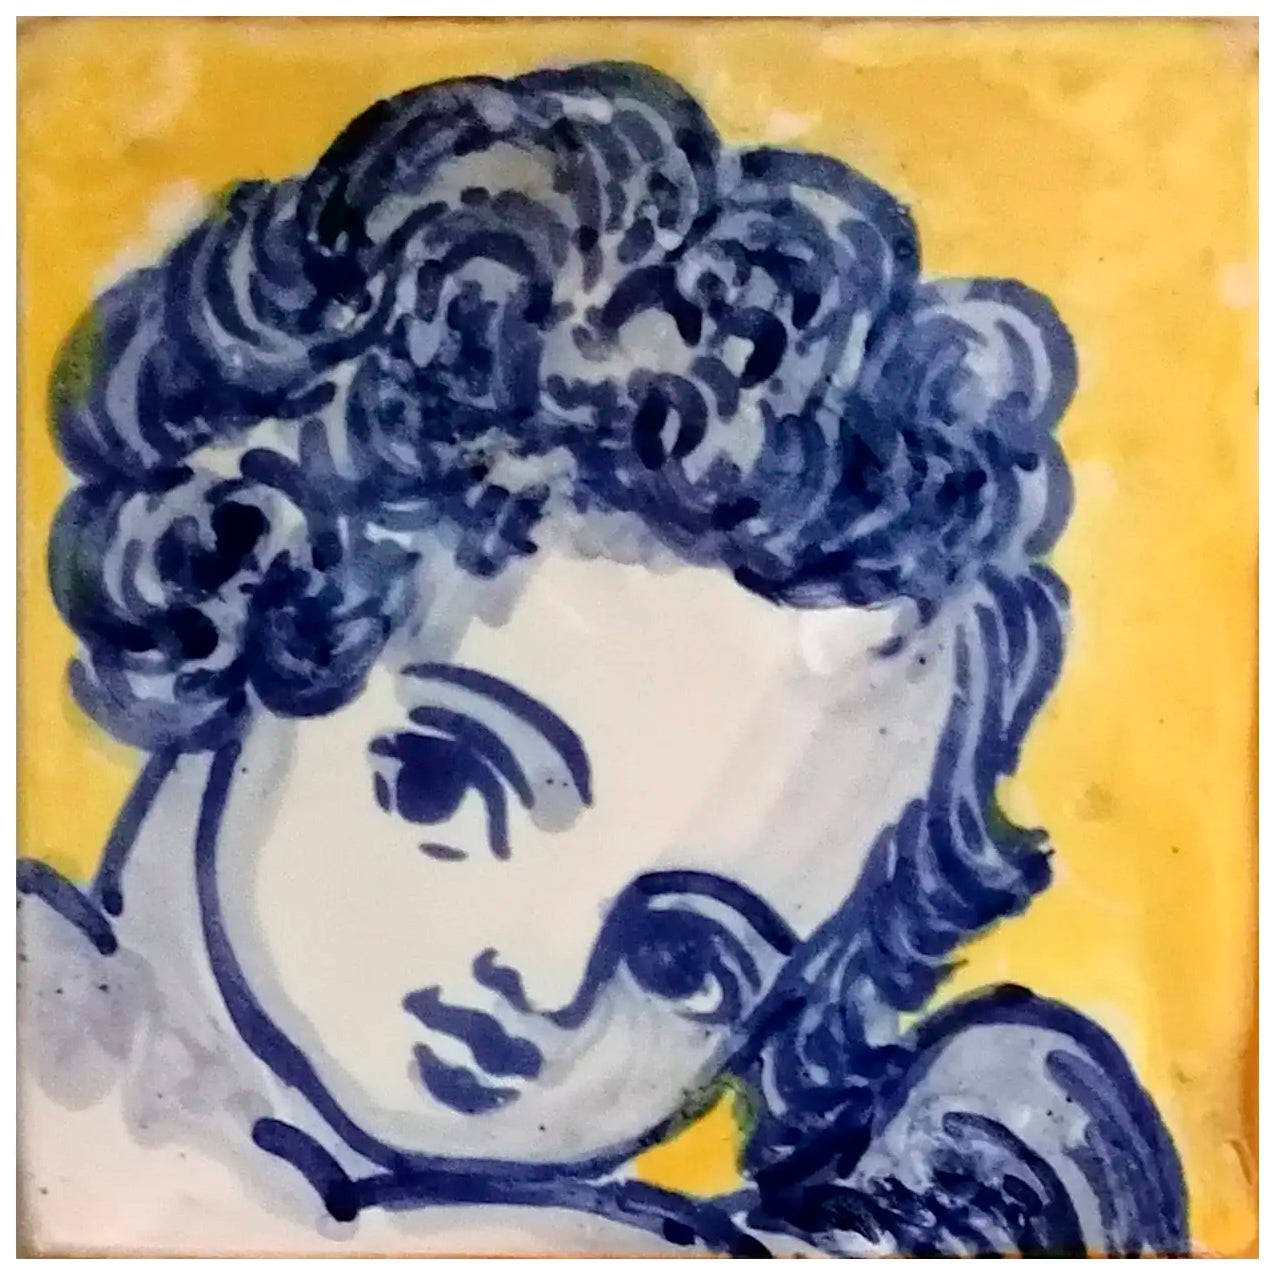 Tile ou Azulejo portugais baroque peint à la main en bleu représentant un chérubin ou un ange